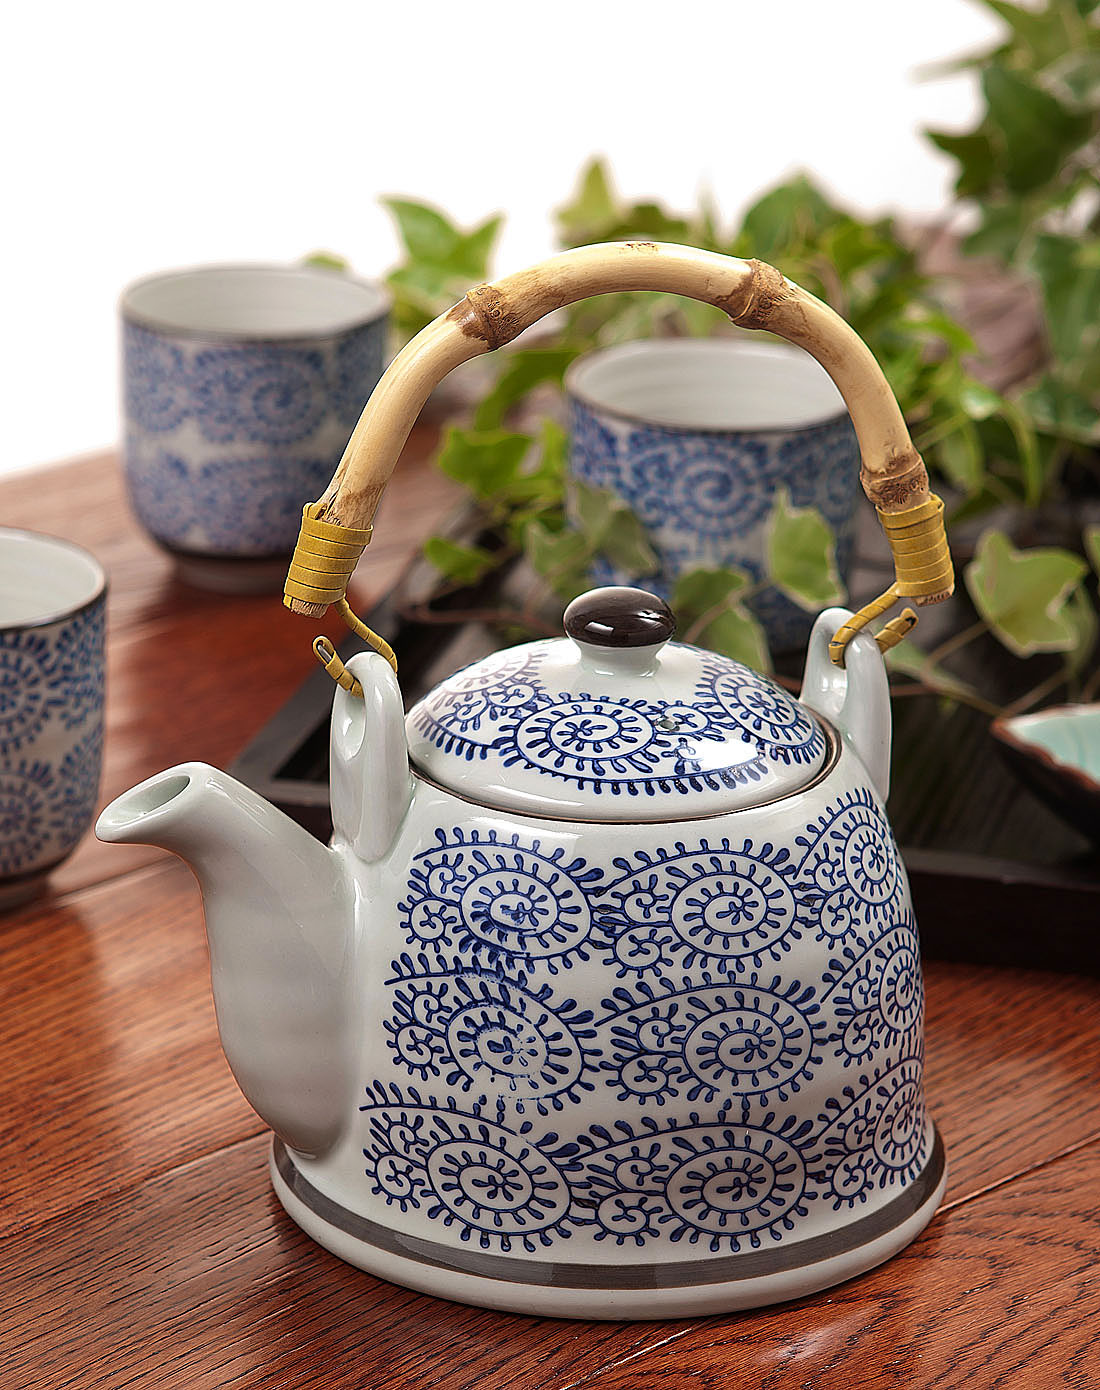 景瓷彩绘茶壶